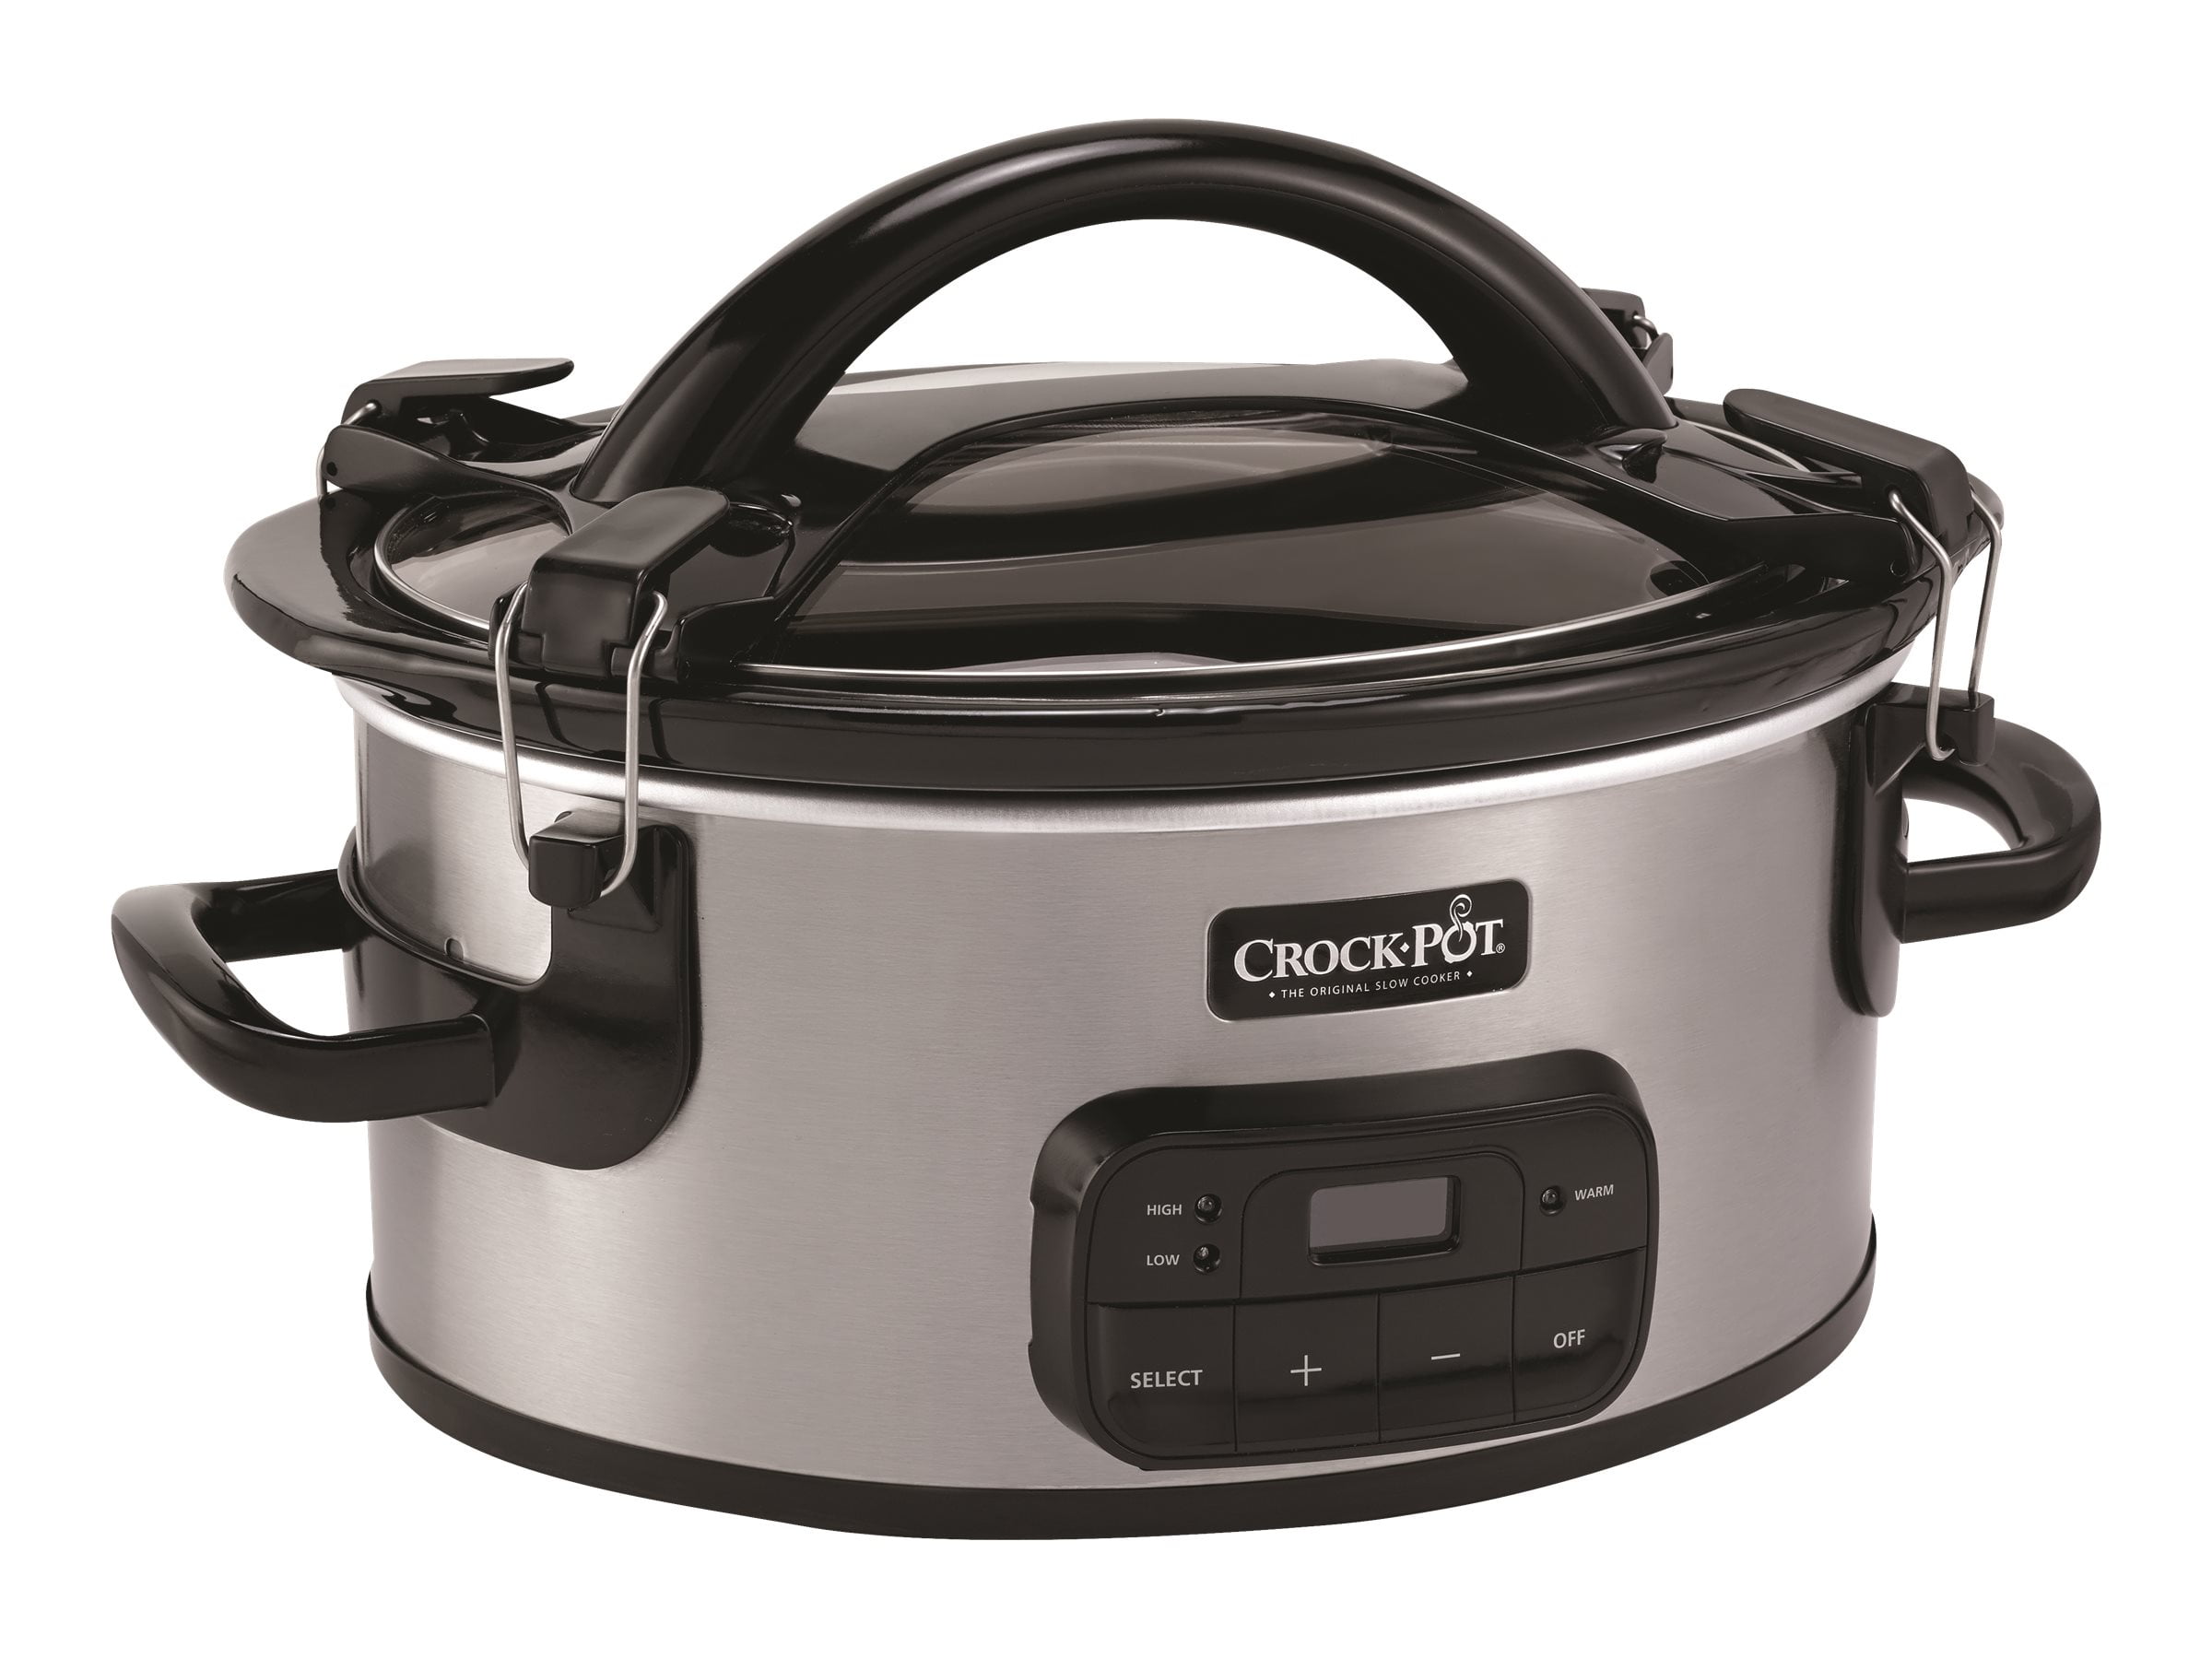 Genuine Crock Pot 162648-000-000 Oval Slow Cooker Lid replaces SCCPVP400 4 qt